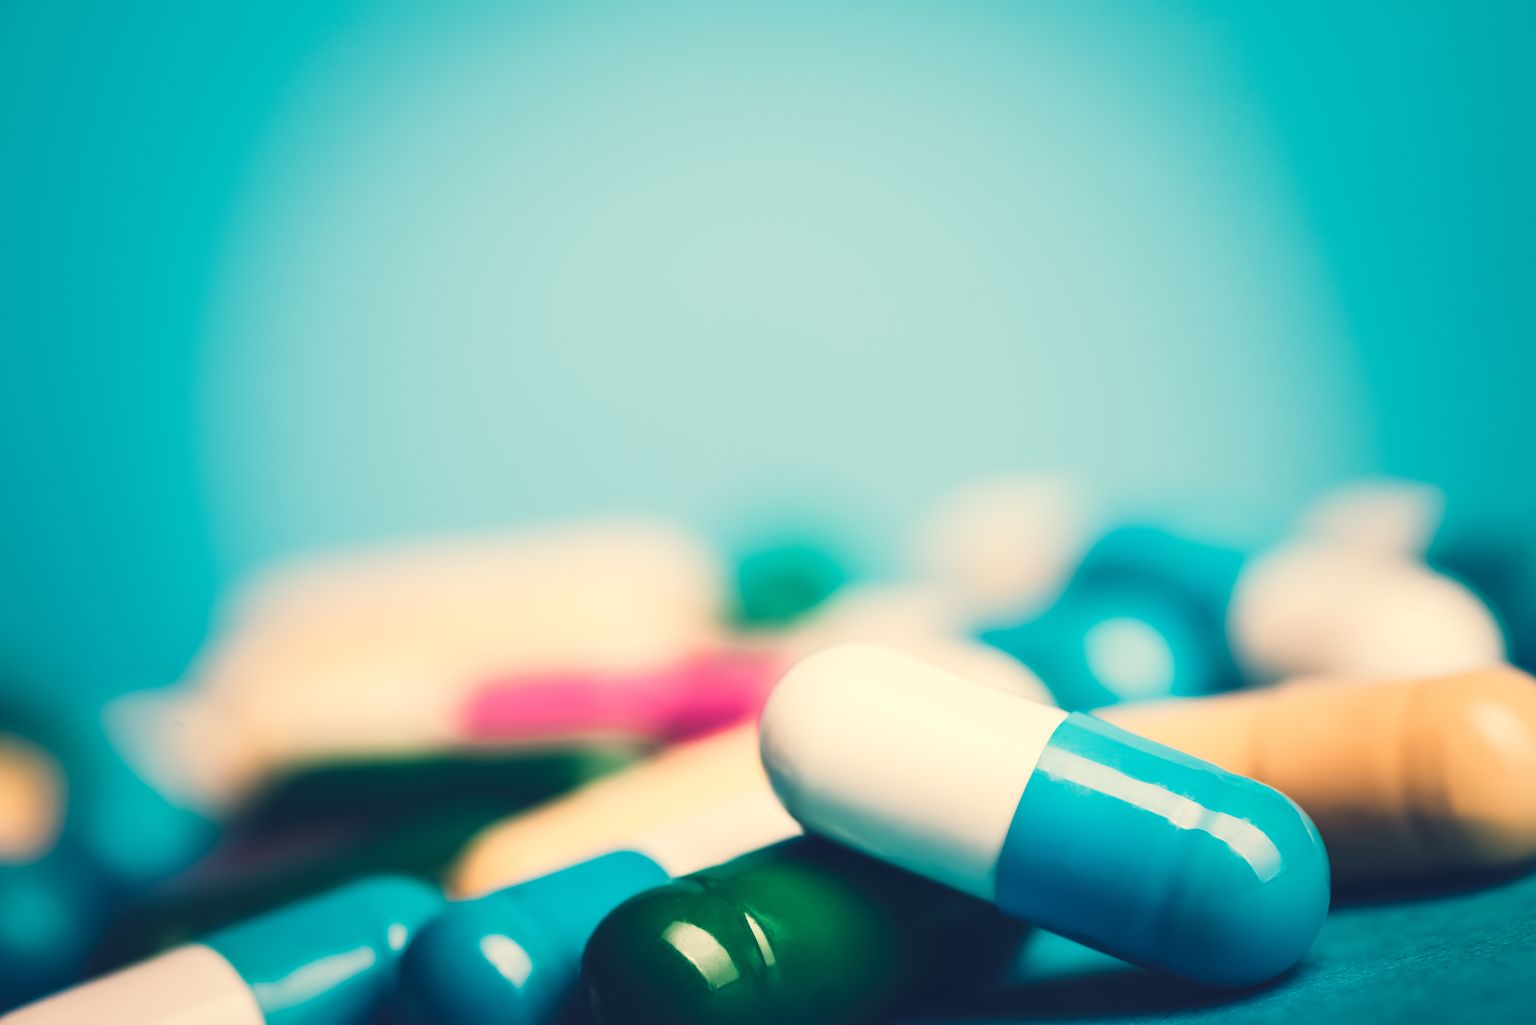 Medicijnen-groene en gele tabletten of capsules op blauwe achtergrond met kopieerruimte.voorschrijven van medicijnen voor behandeling. Geneesmiddelen voor genezing in containers voor gezondheid. Antibiotica